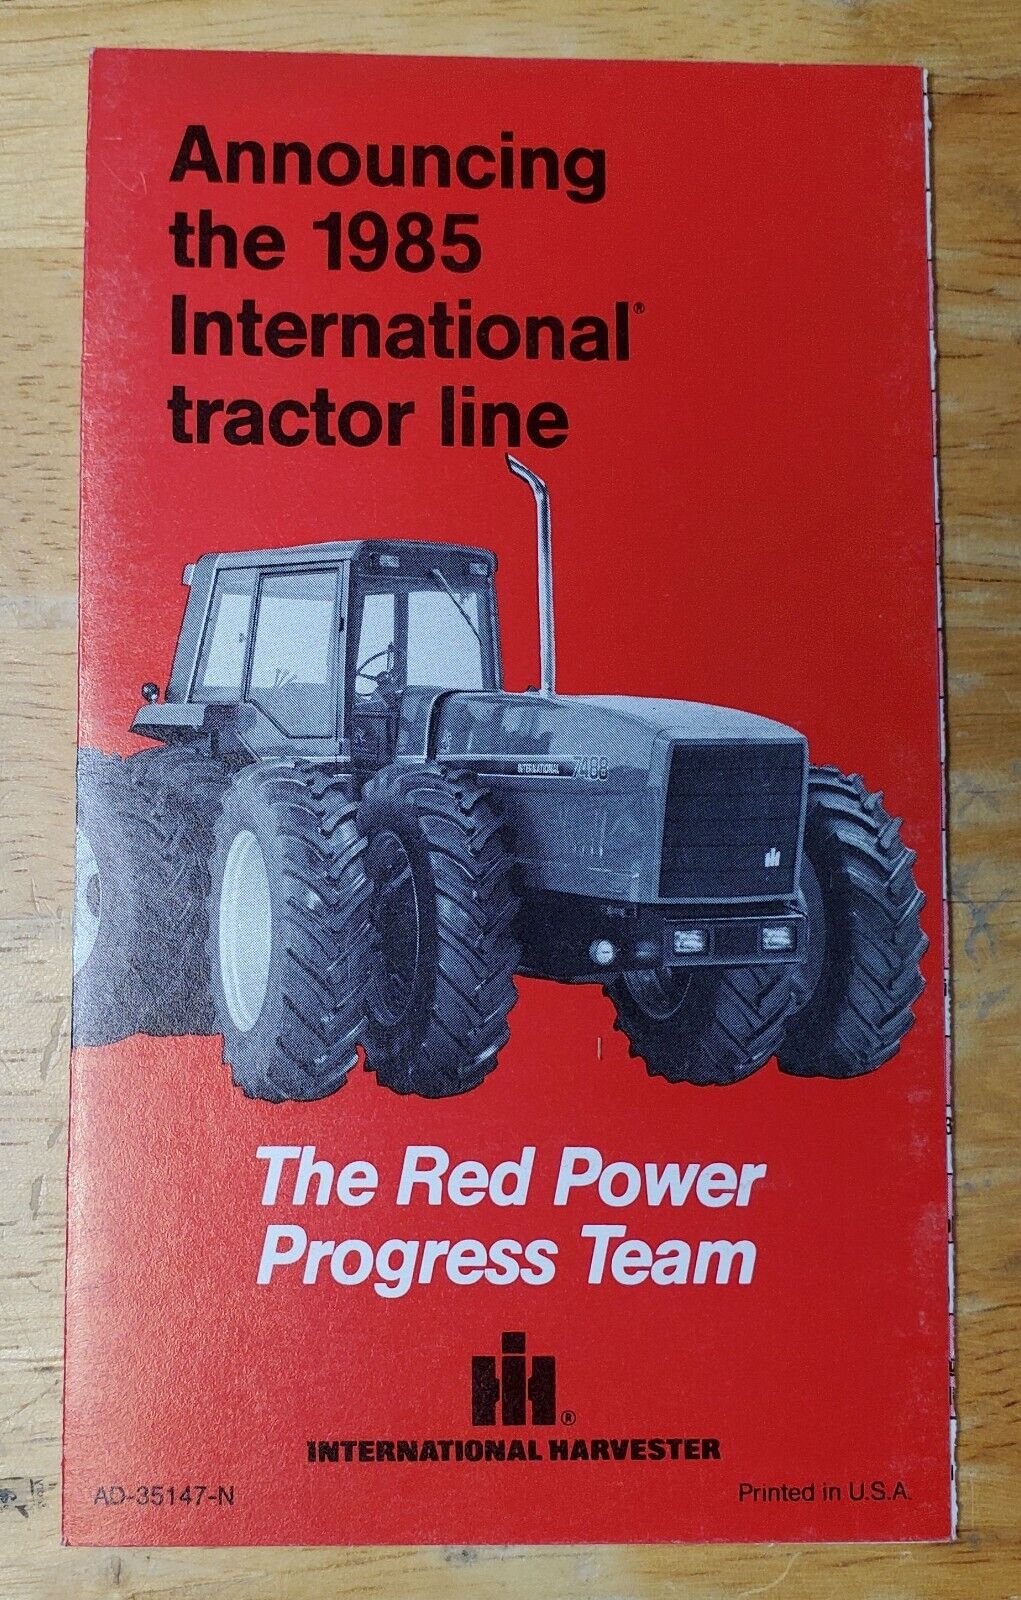 1985 International Harvester Tractor Line Sales Brochure Pamphlet AD-35147-N